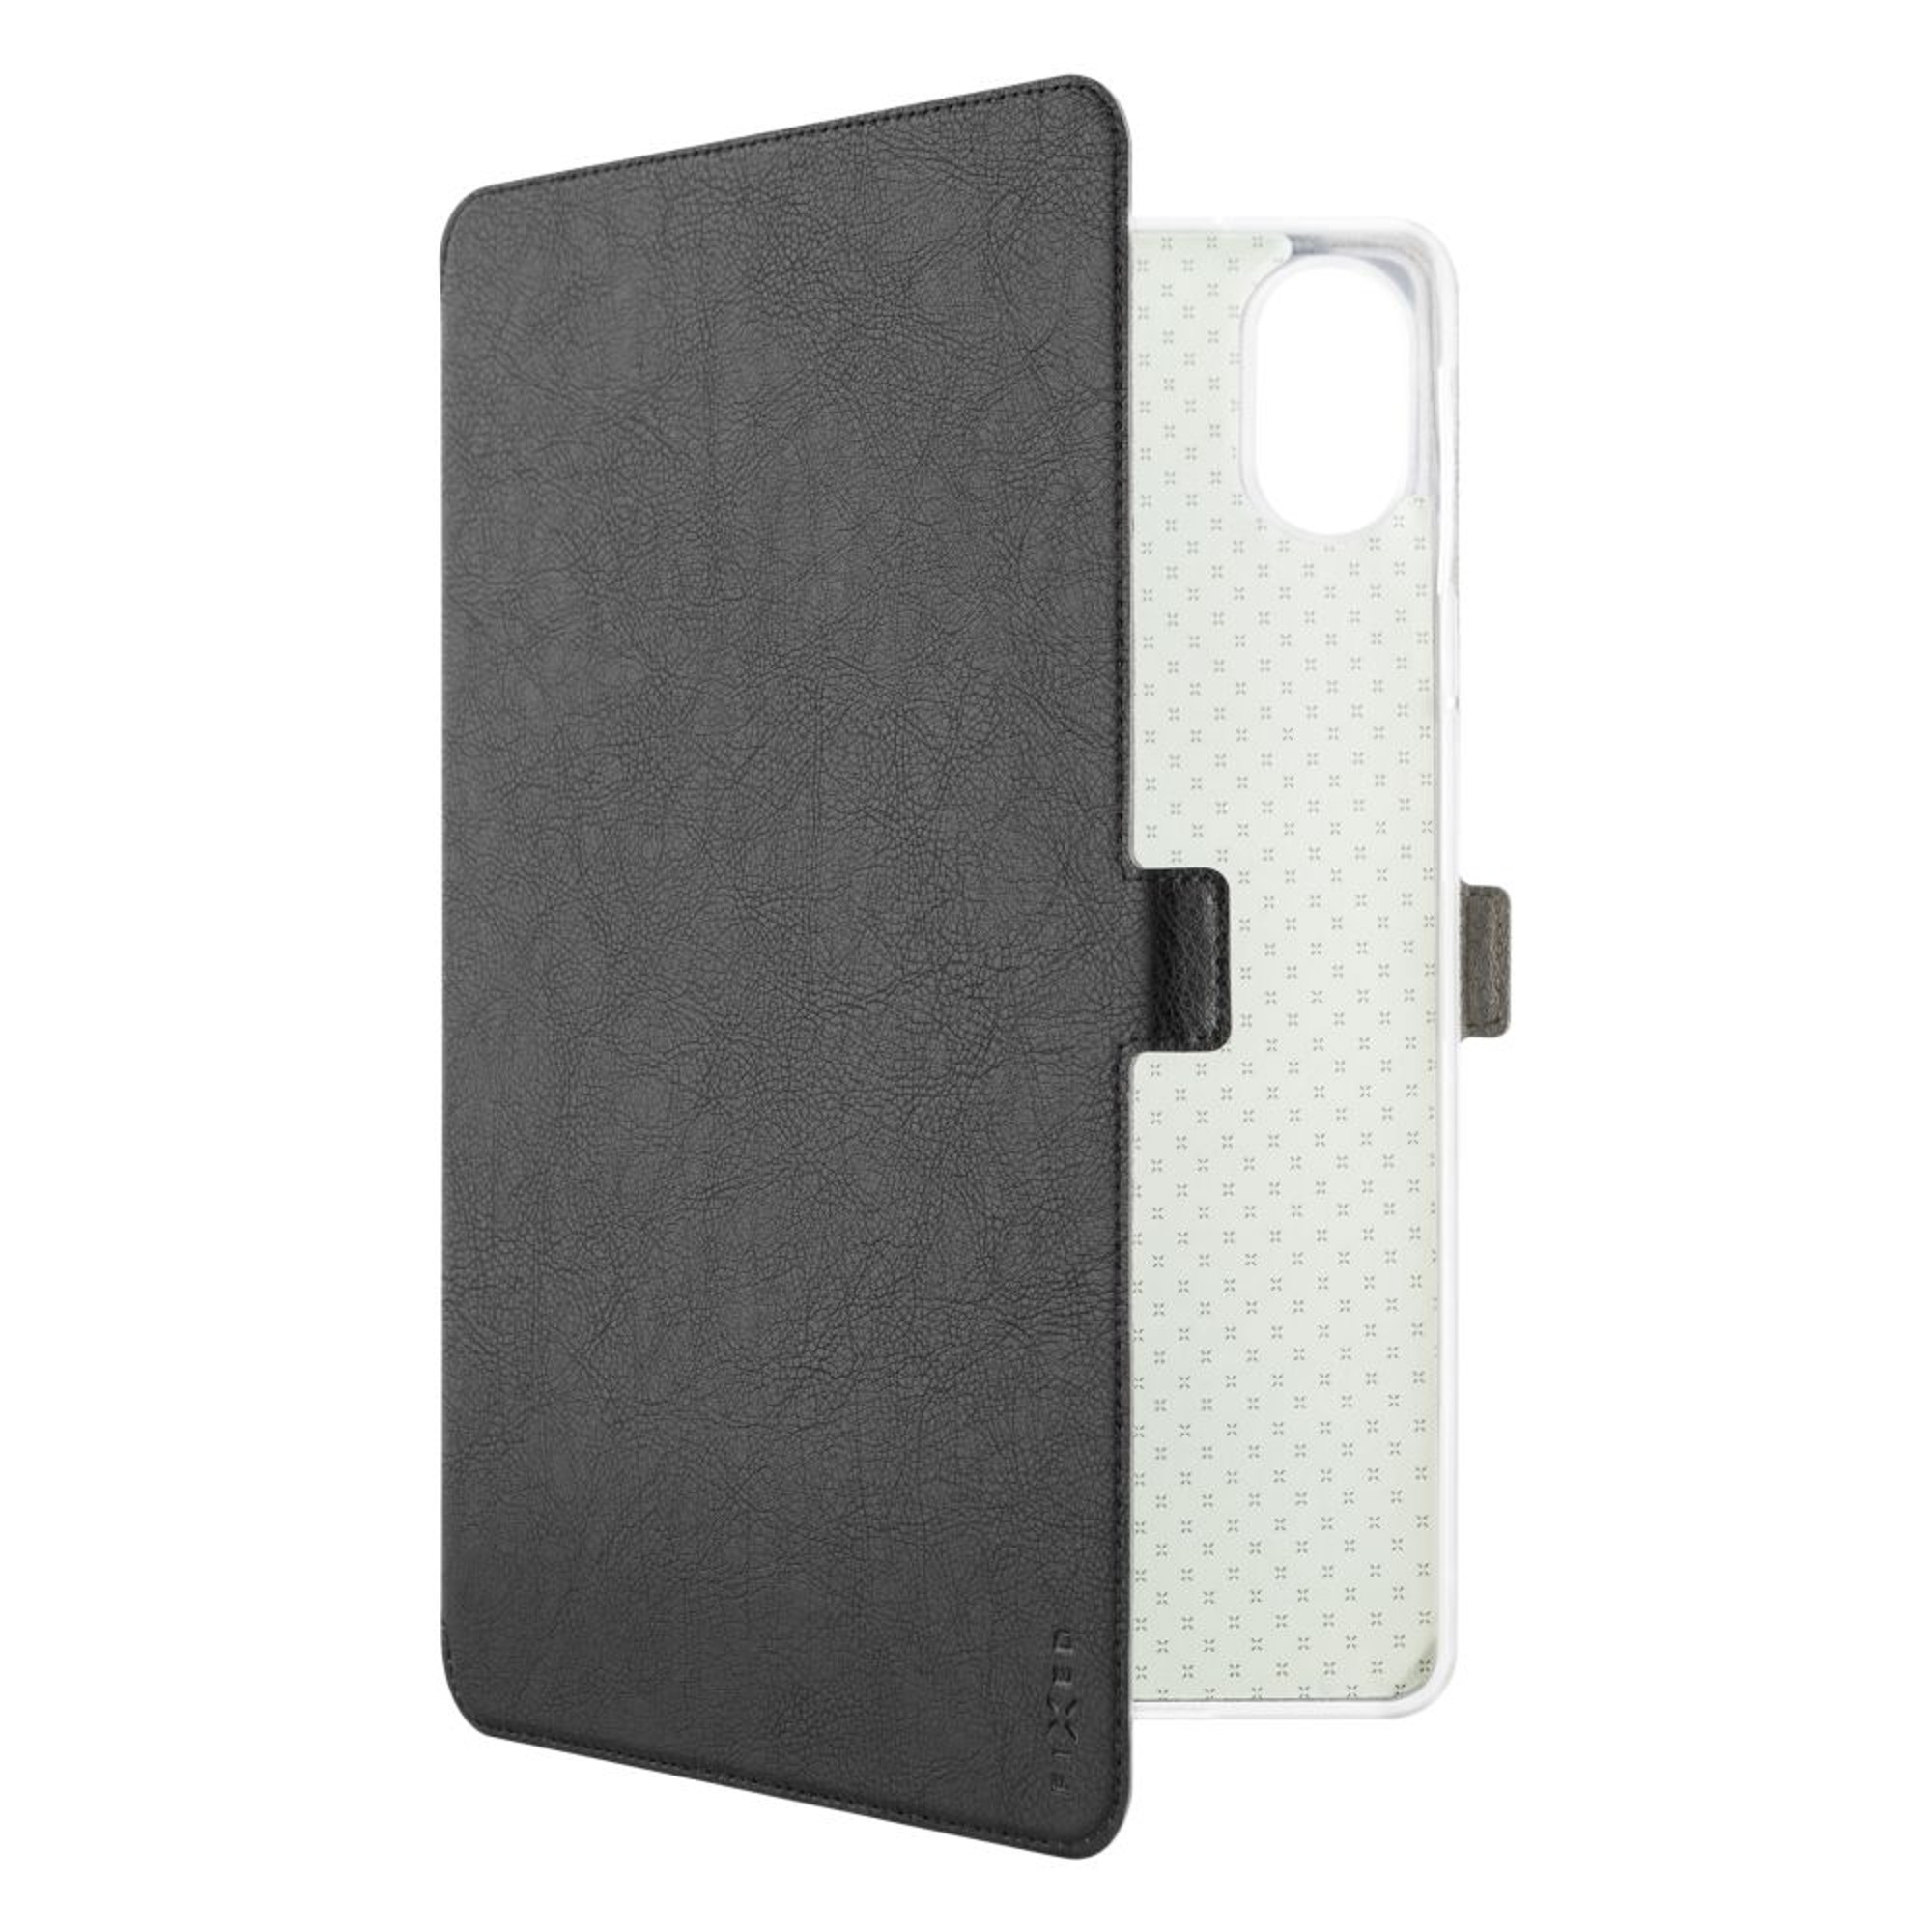 Xiaomi, SE, Redmi FIXED Pad Bookcover, Schwarz FIXTOT-1231,